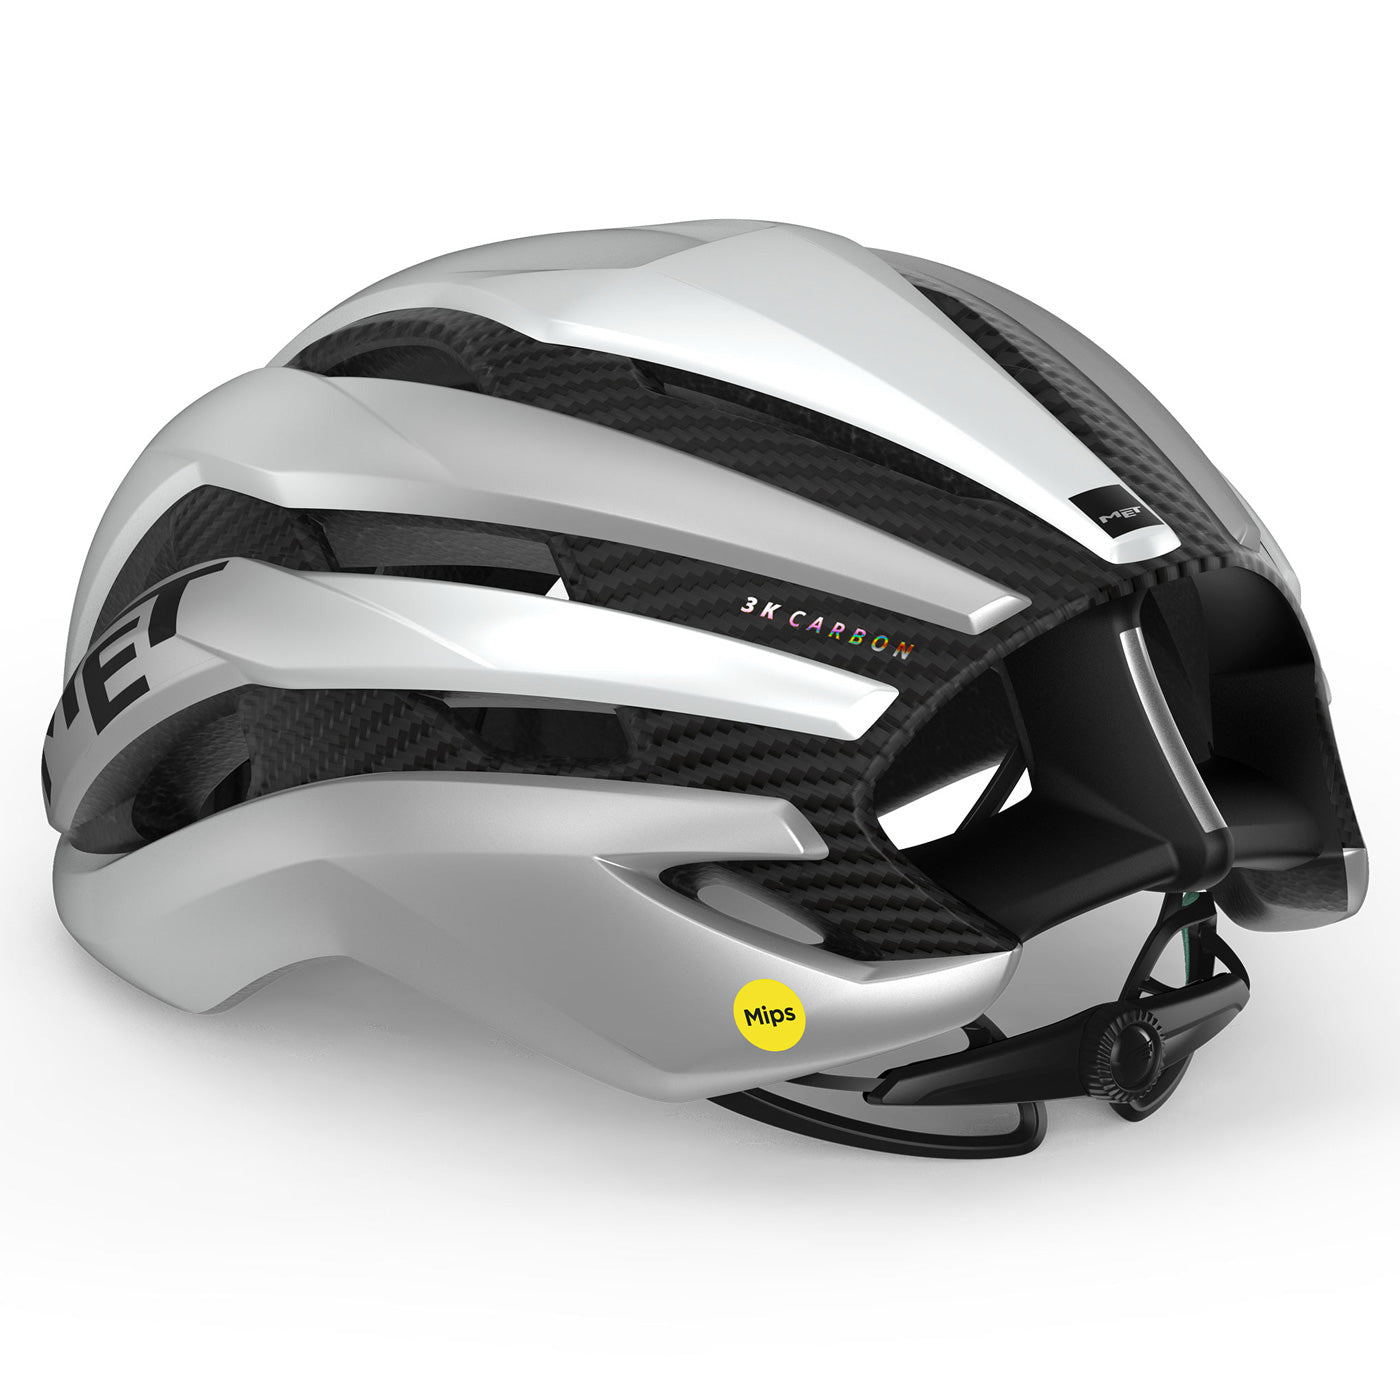 Met Trenta 3K Carbon Mips helmet - White